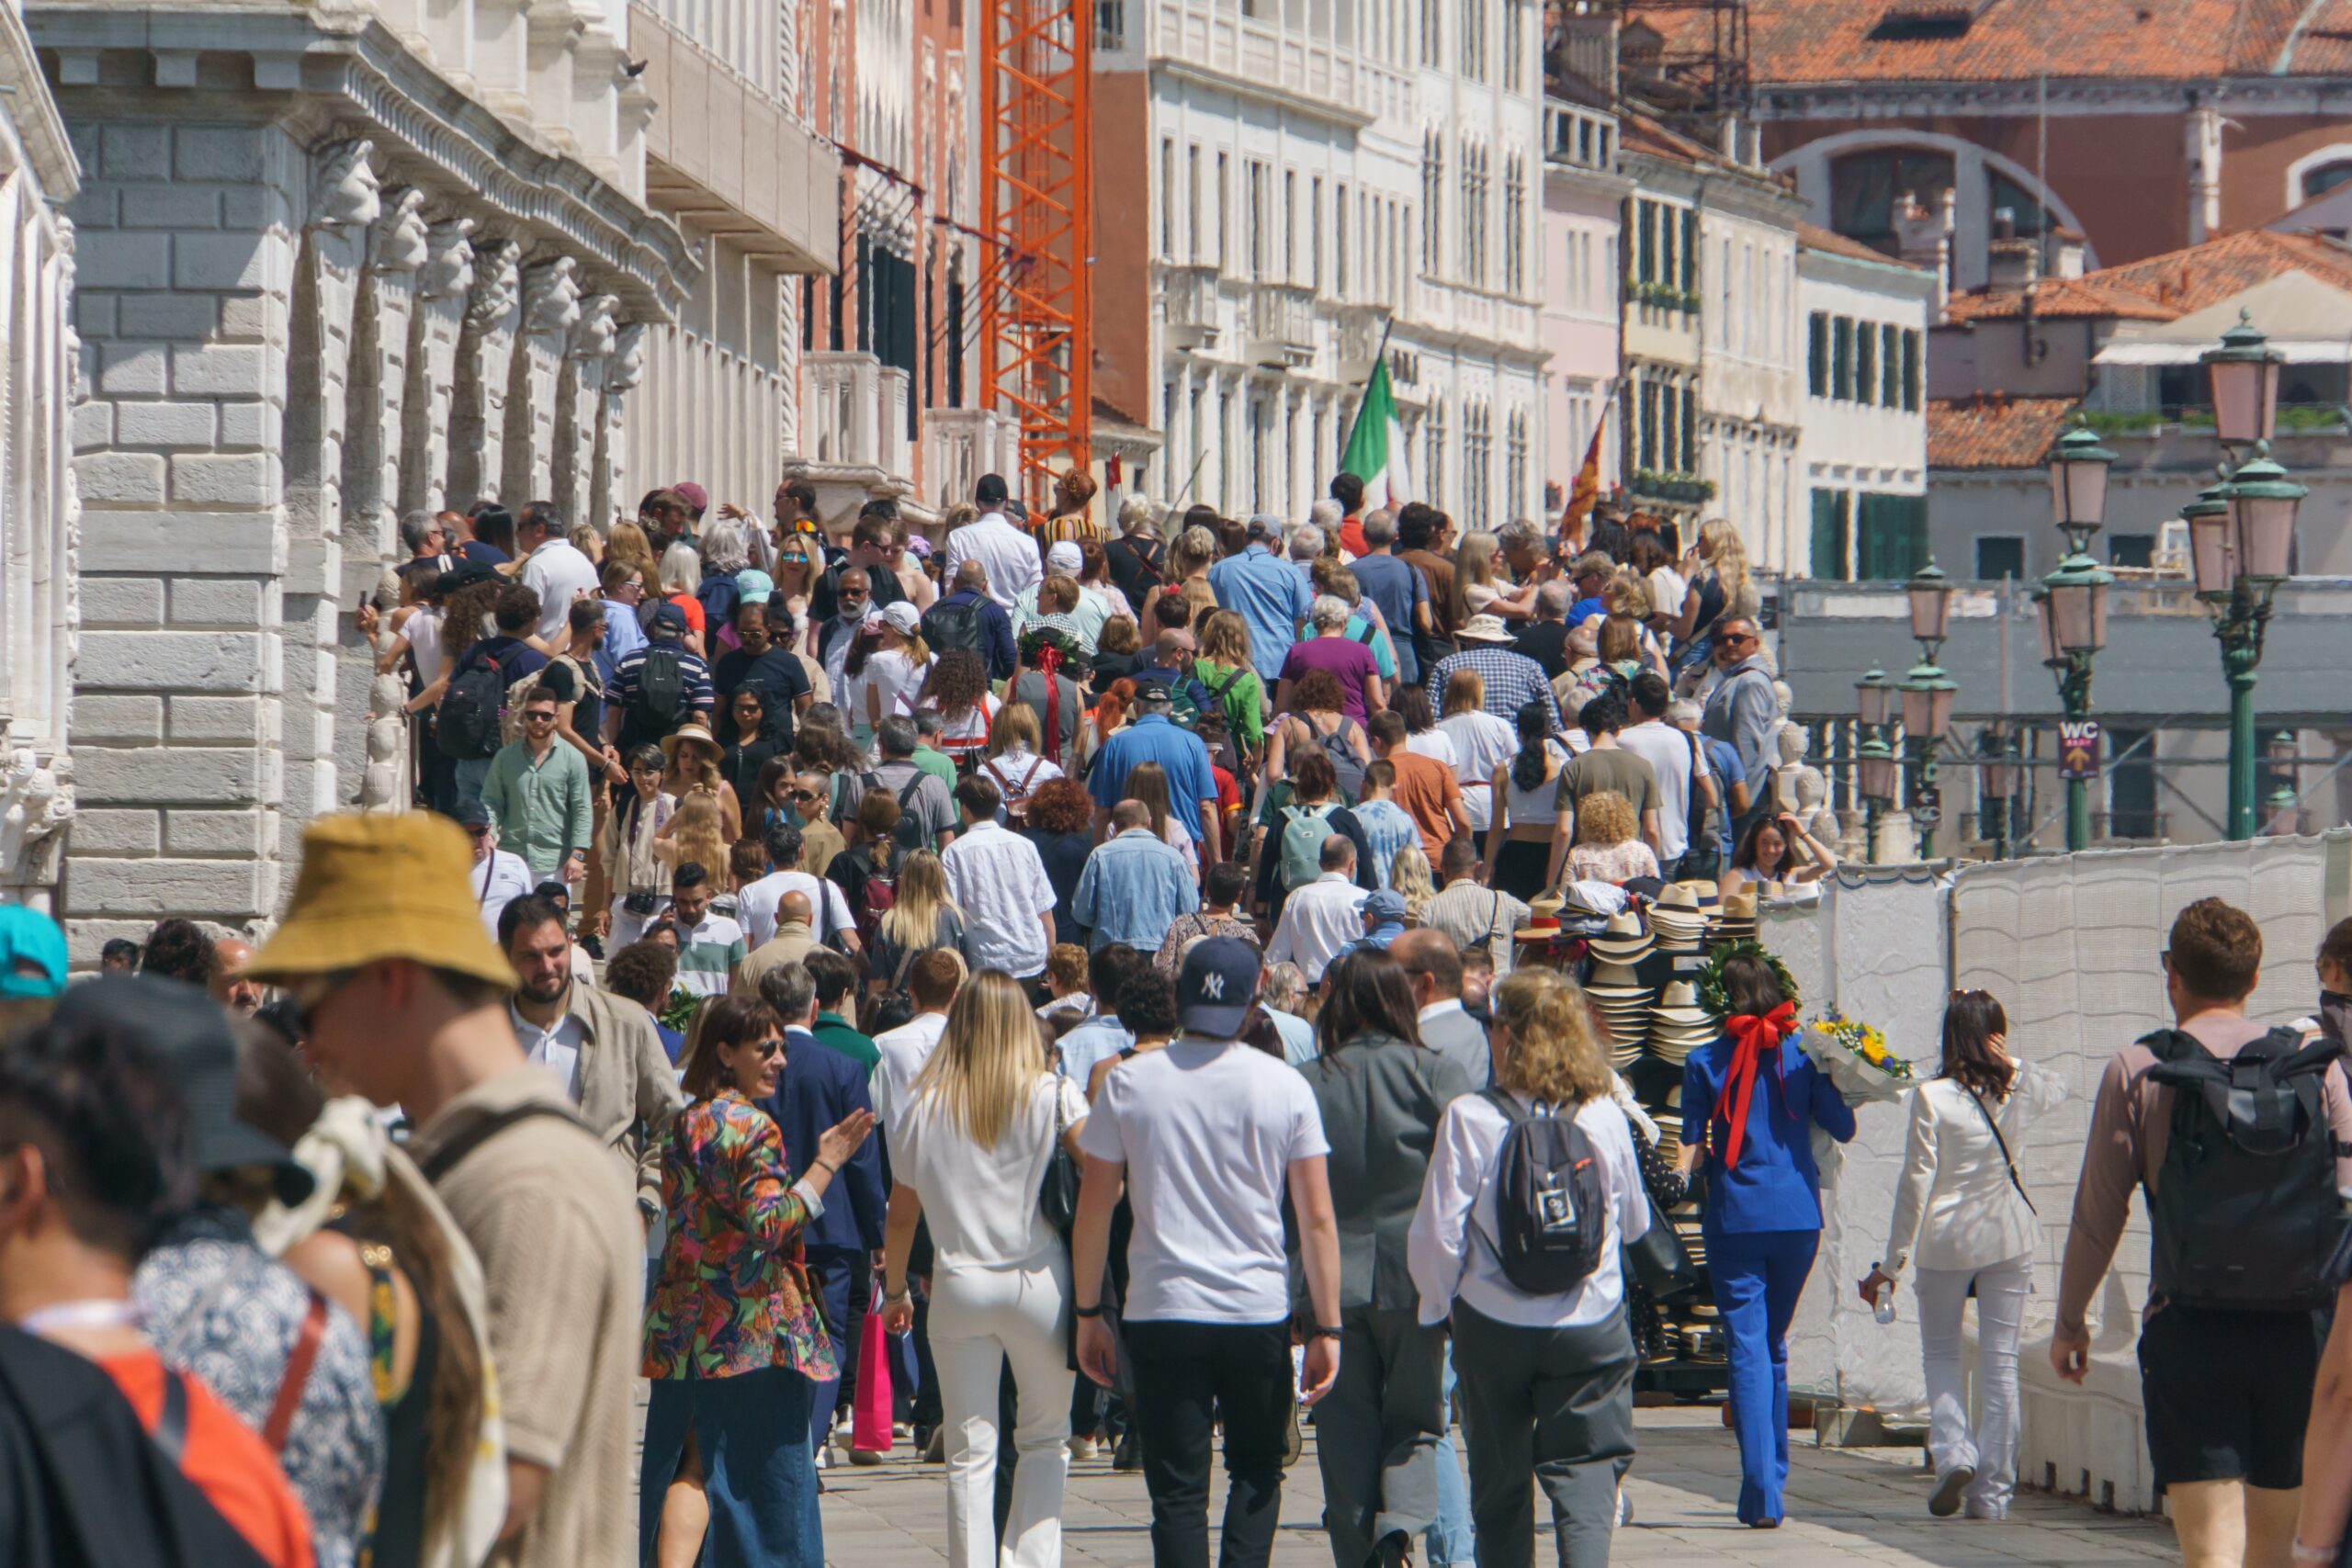 Duży tłum ludzi spacerujący wzdłuż wąskiej, zabytkowej uliczki w mieście. Ilu jest ludzi na świecie